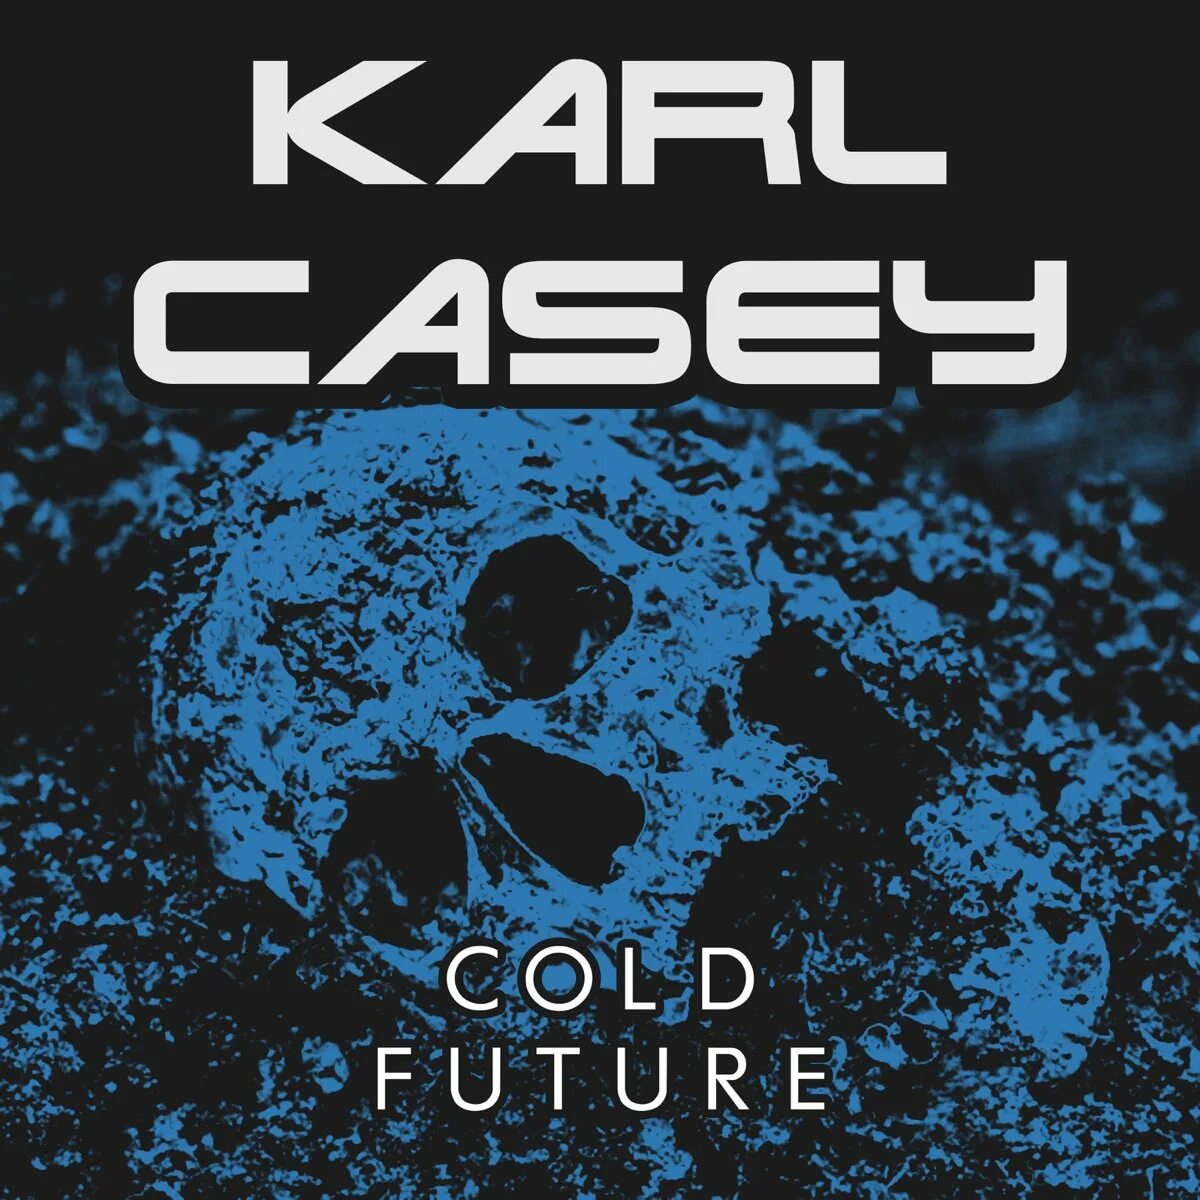 Karl Casey. Karl Casey альбомы. Karl Casey Dangerous. Cold future